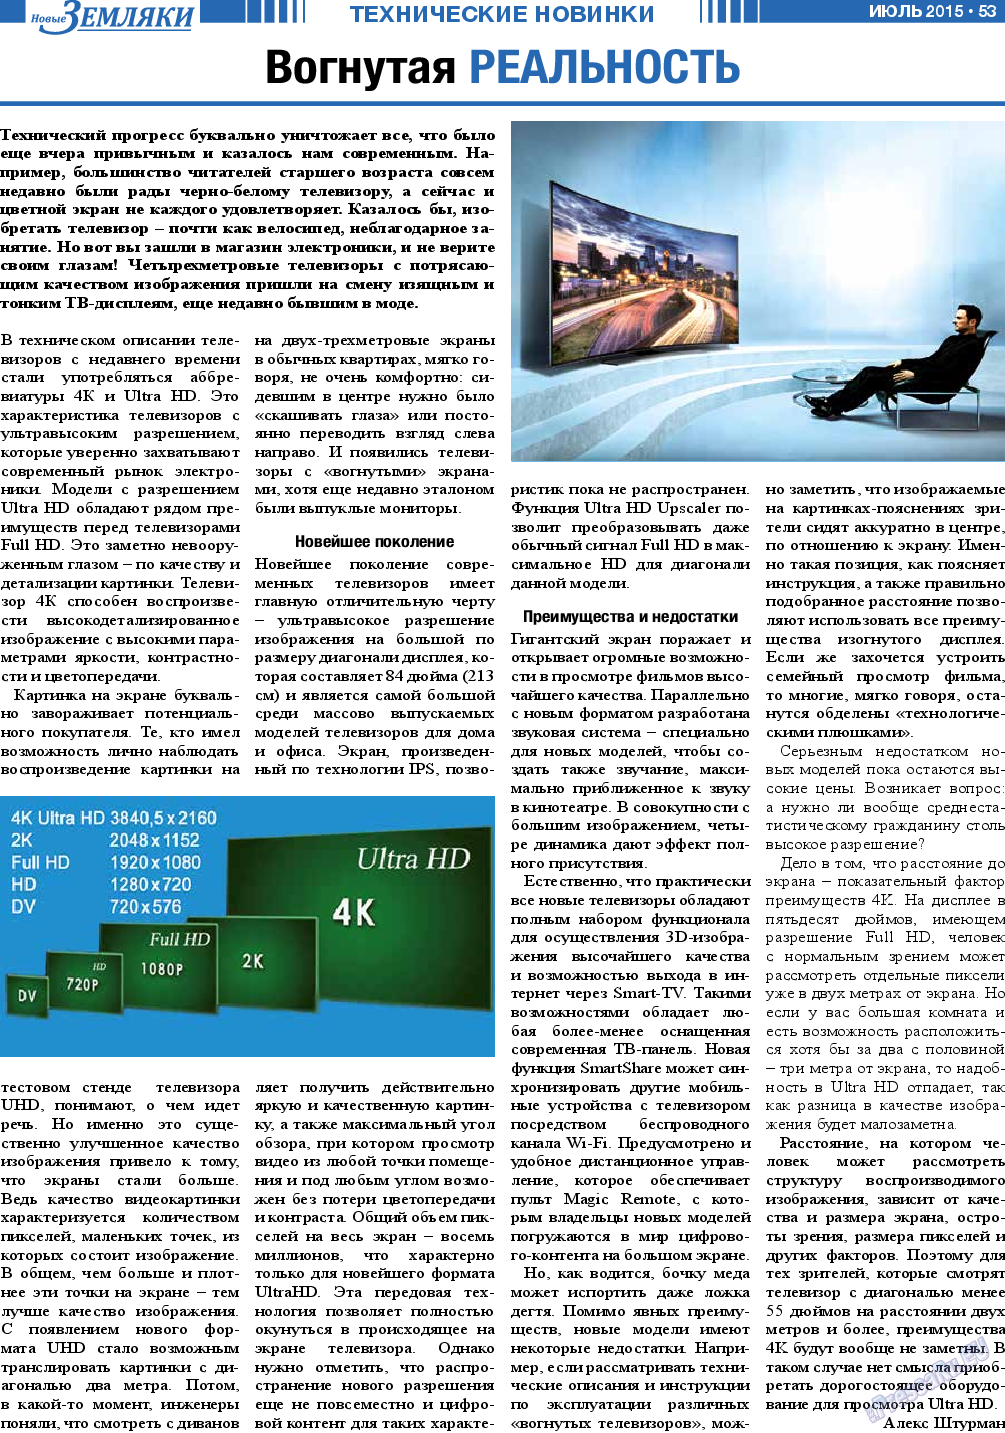 Новые Земляки, газета. 2015 №7 стр.53